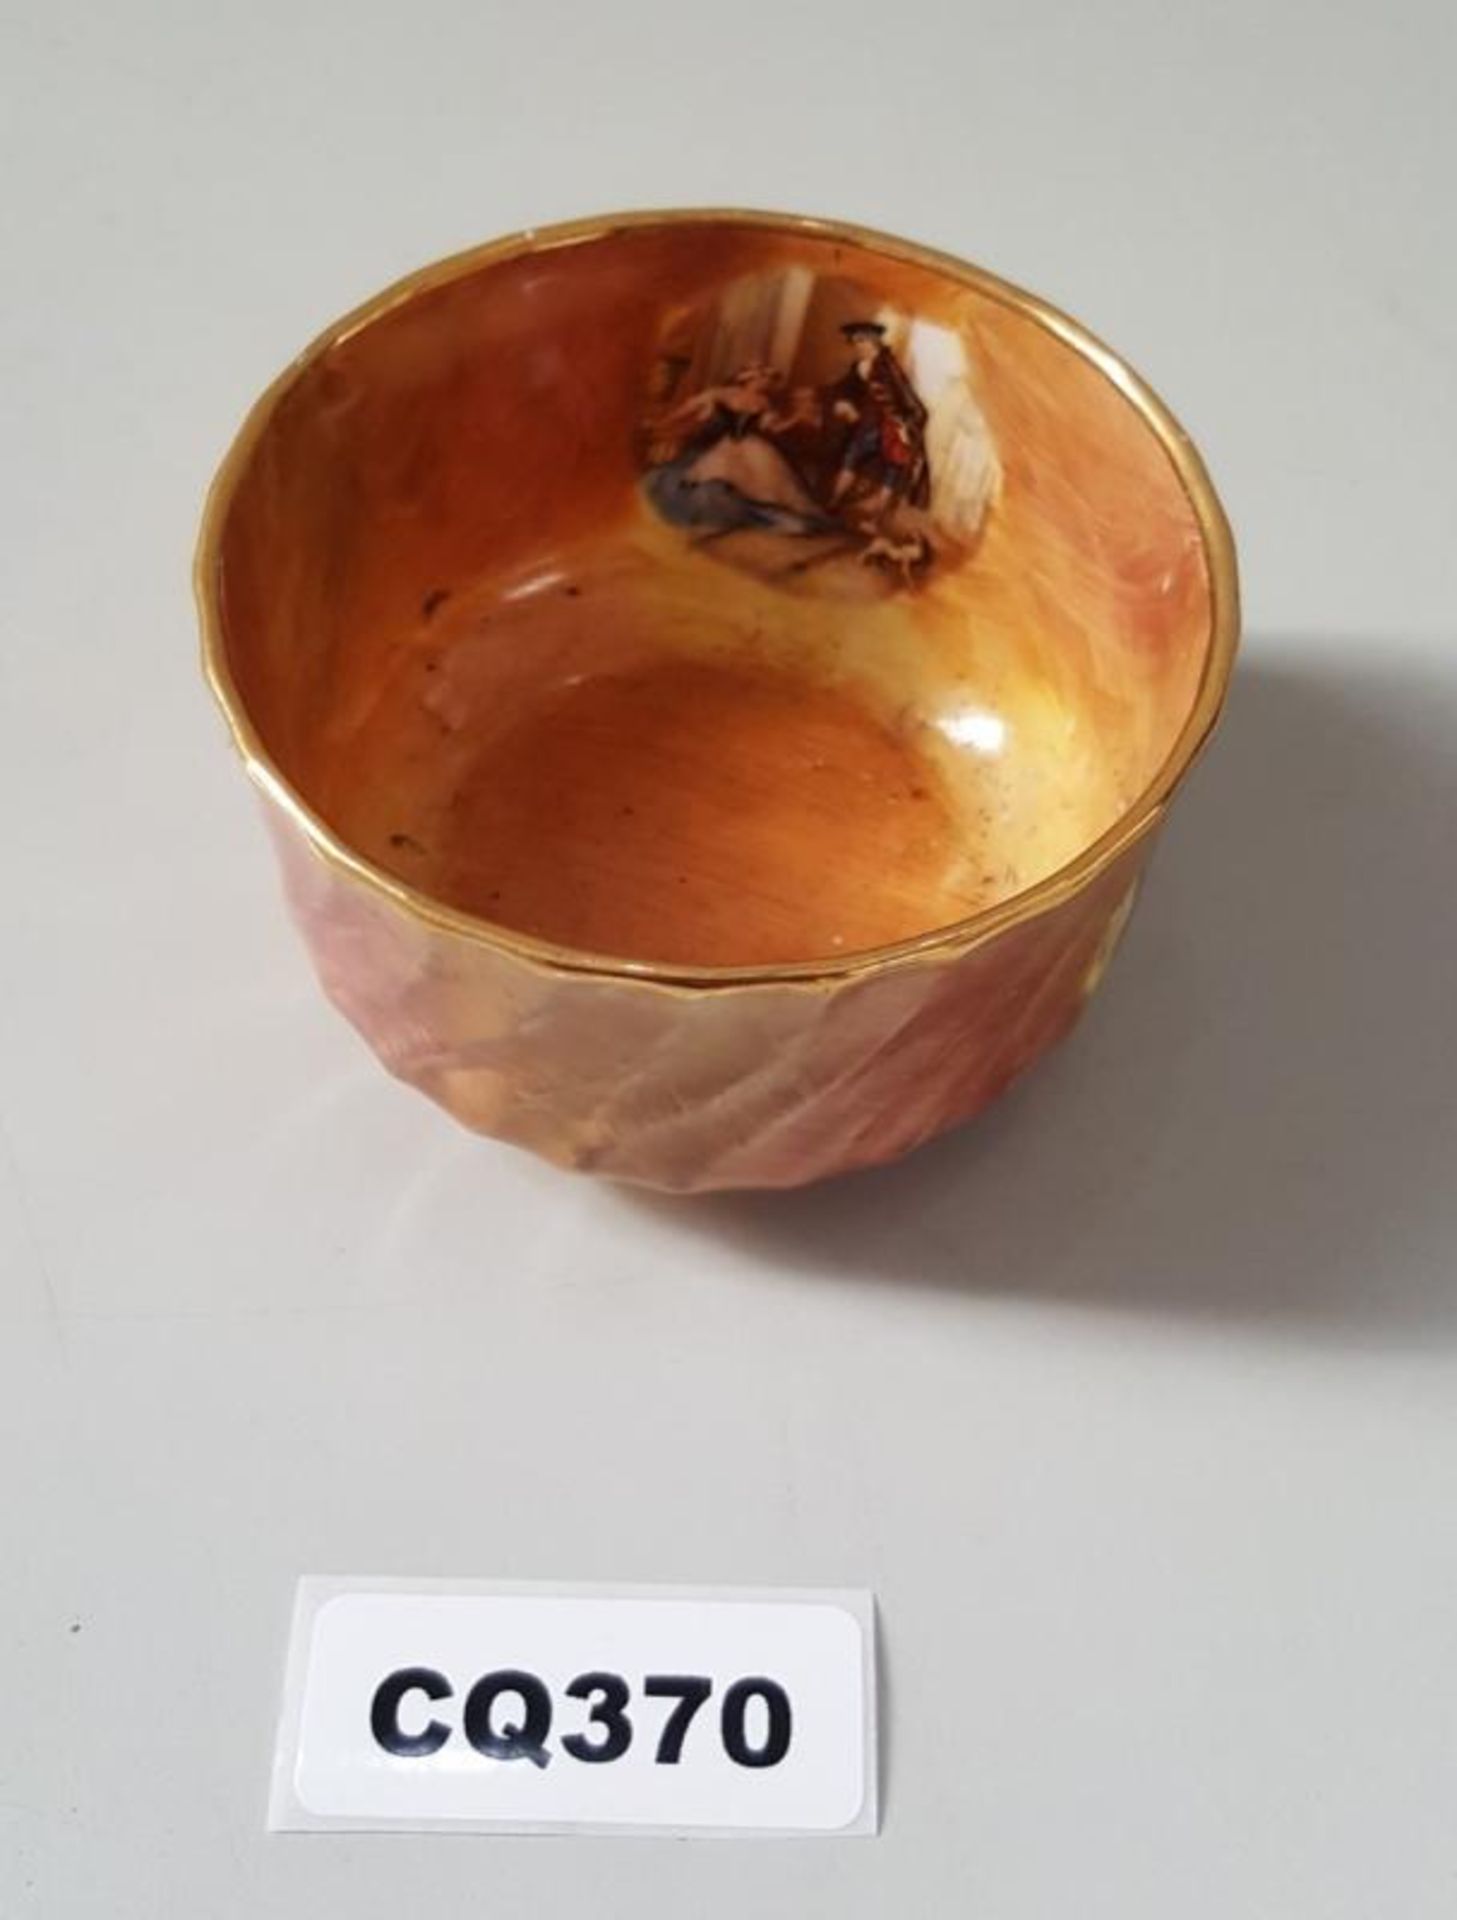 1 x Portmaster Bone China Small Orange Bowl - Ref CQ370 E - Dimensions: D10/H5cm- CL334 - Location: - Image 3 of 3